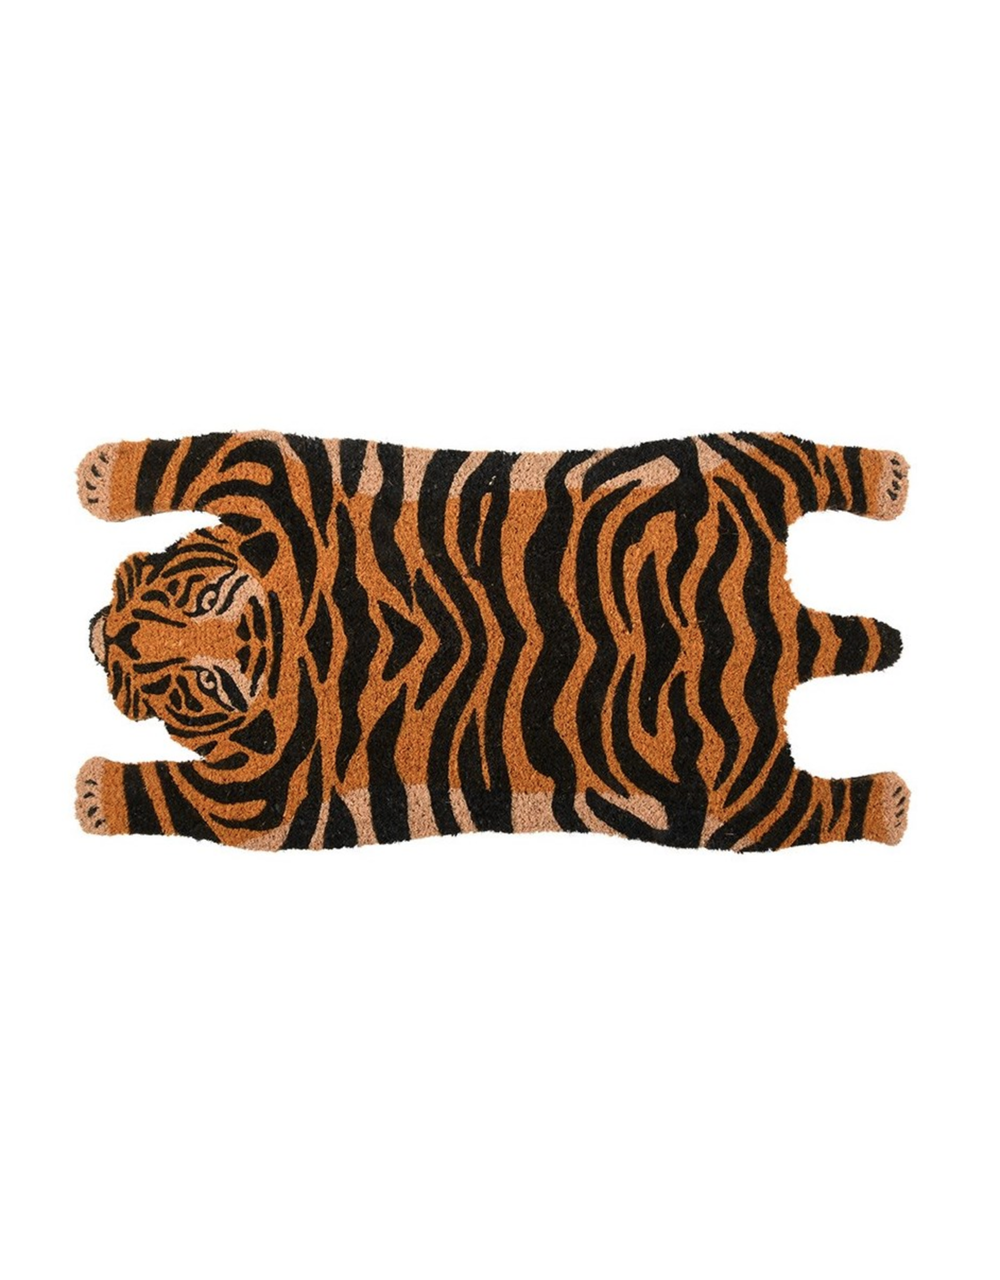 Tiger door mat | $69.99 at The Independent Mercantile